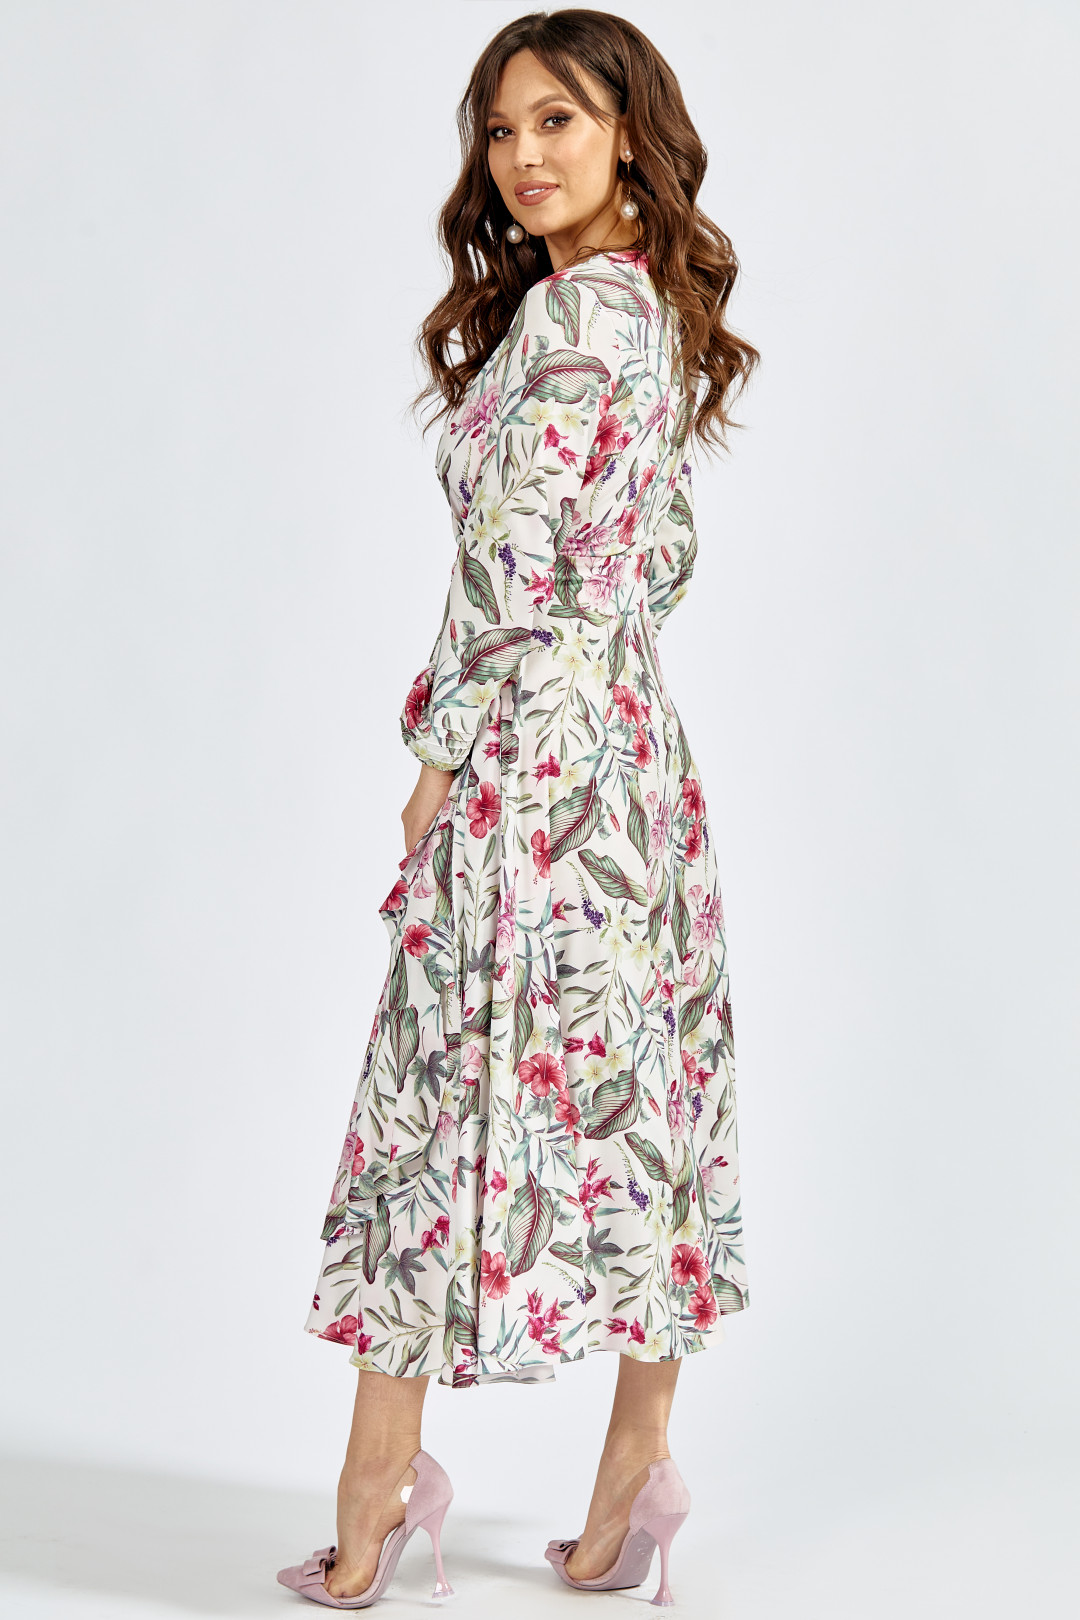 Платье ТЭФФИ-стиль 1417 цветы на молочном